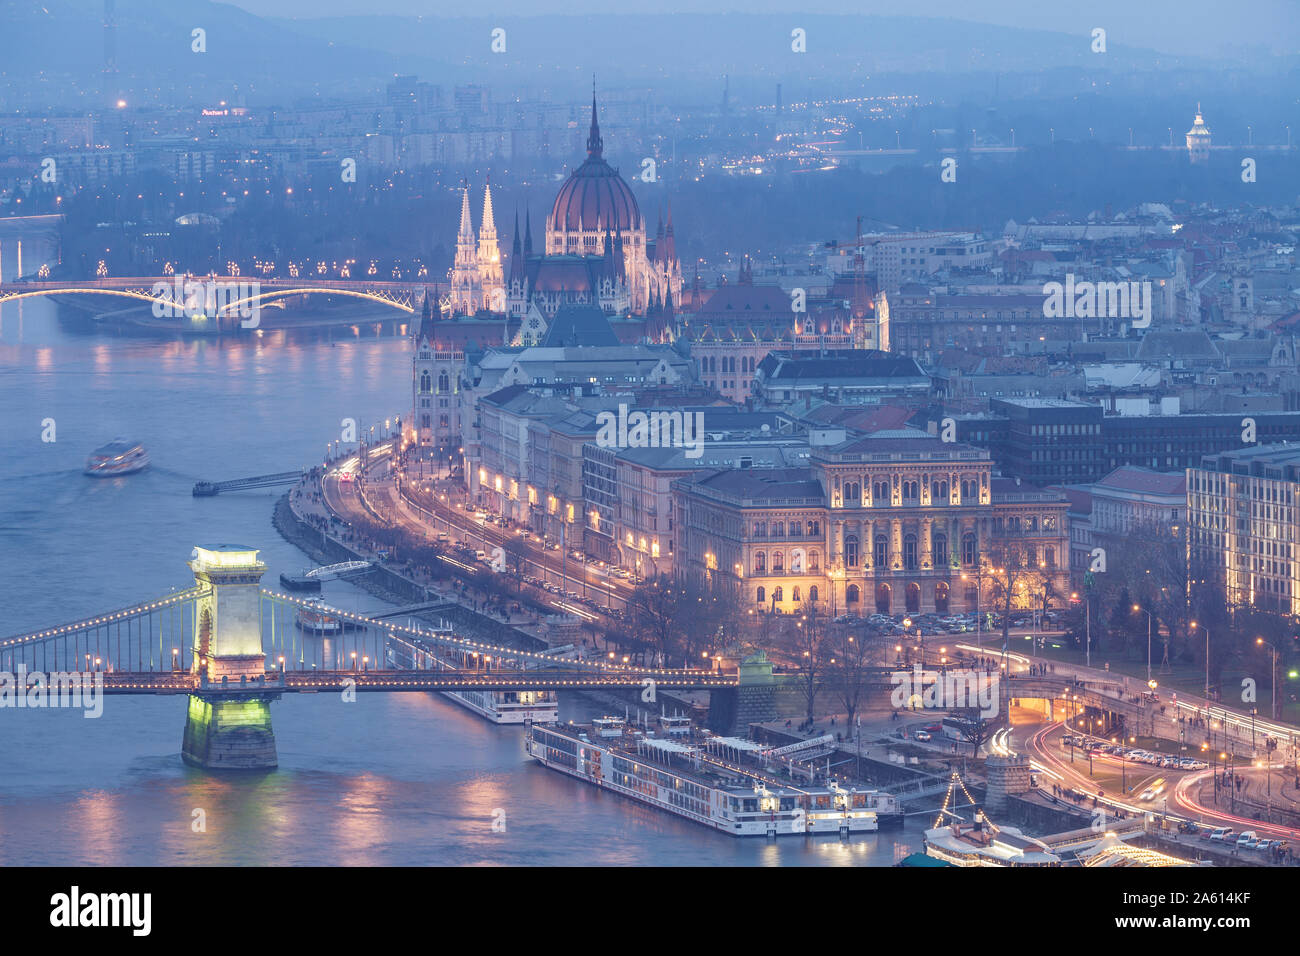 Die Ungarischen Parlament und der Kettenbrücke über die Donau, Weltkulturerbe der UNESCO, Budapest, Ungarn, Europa Stockfoto